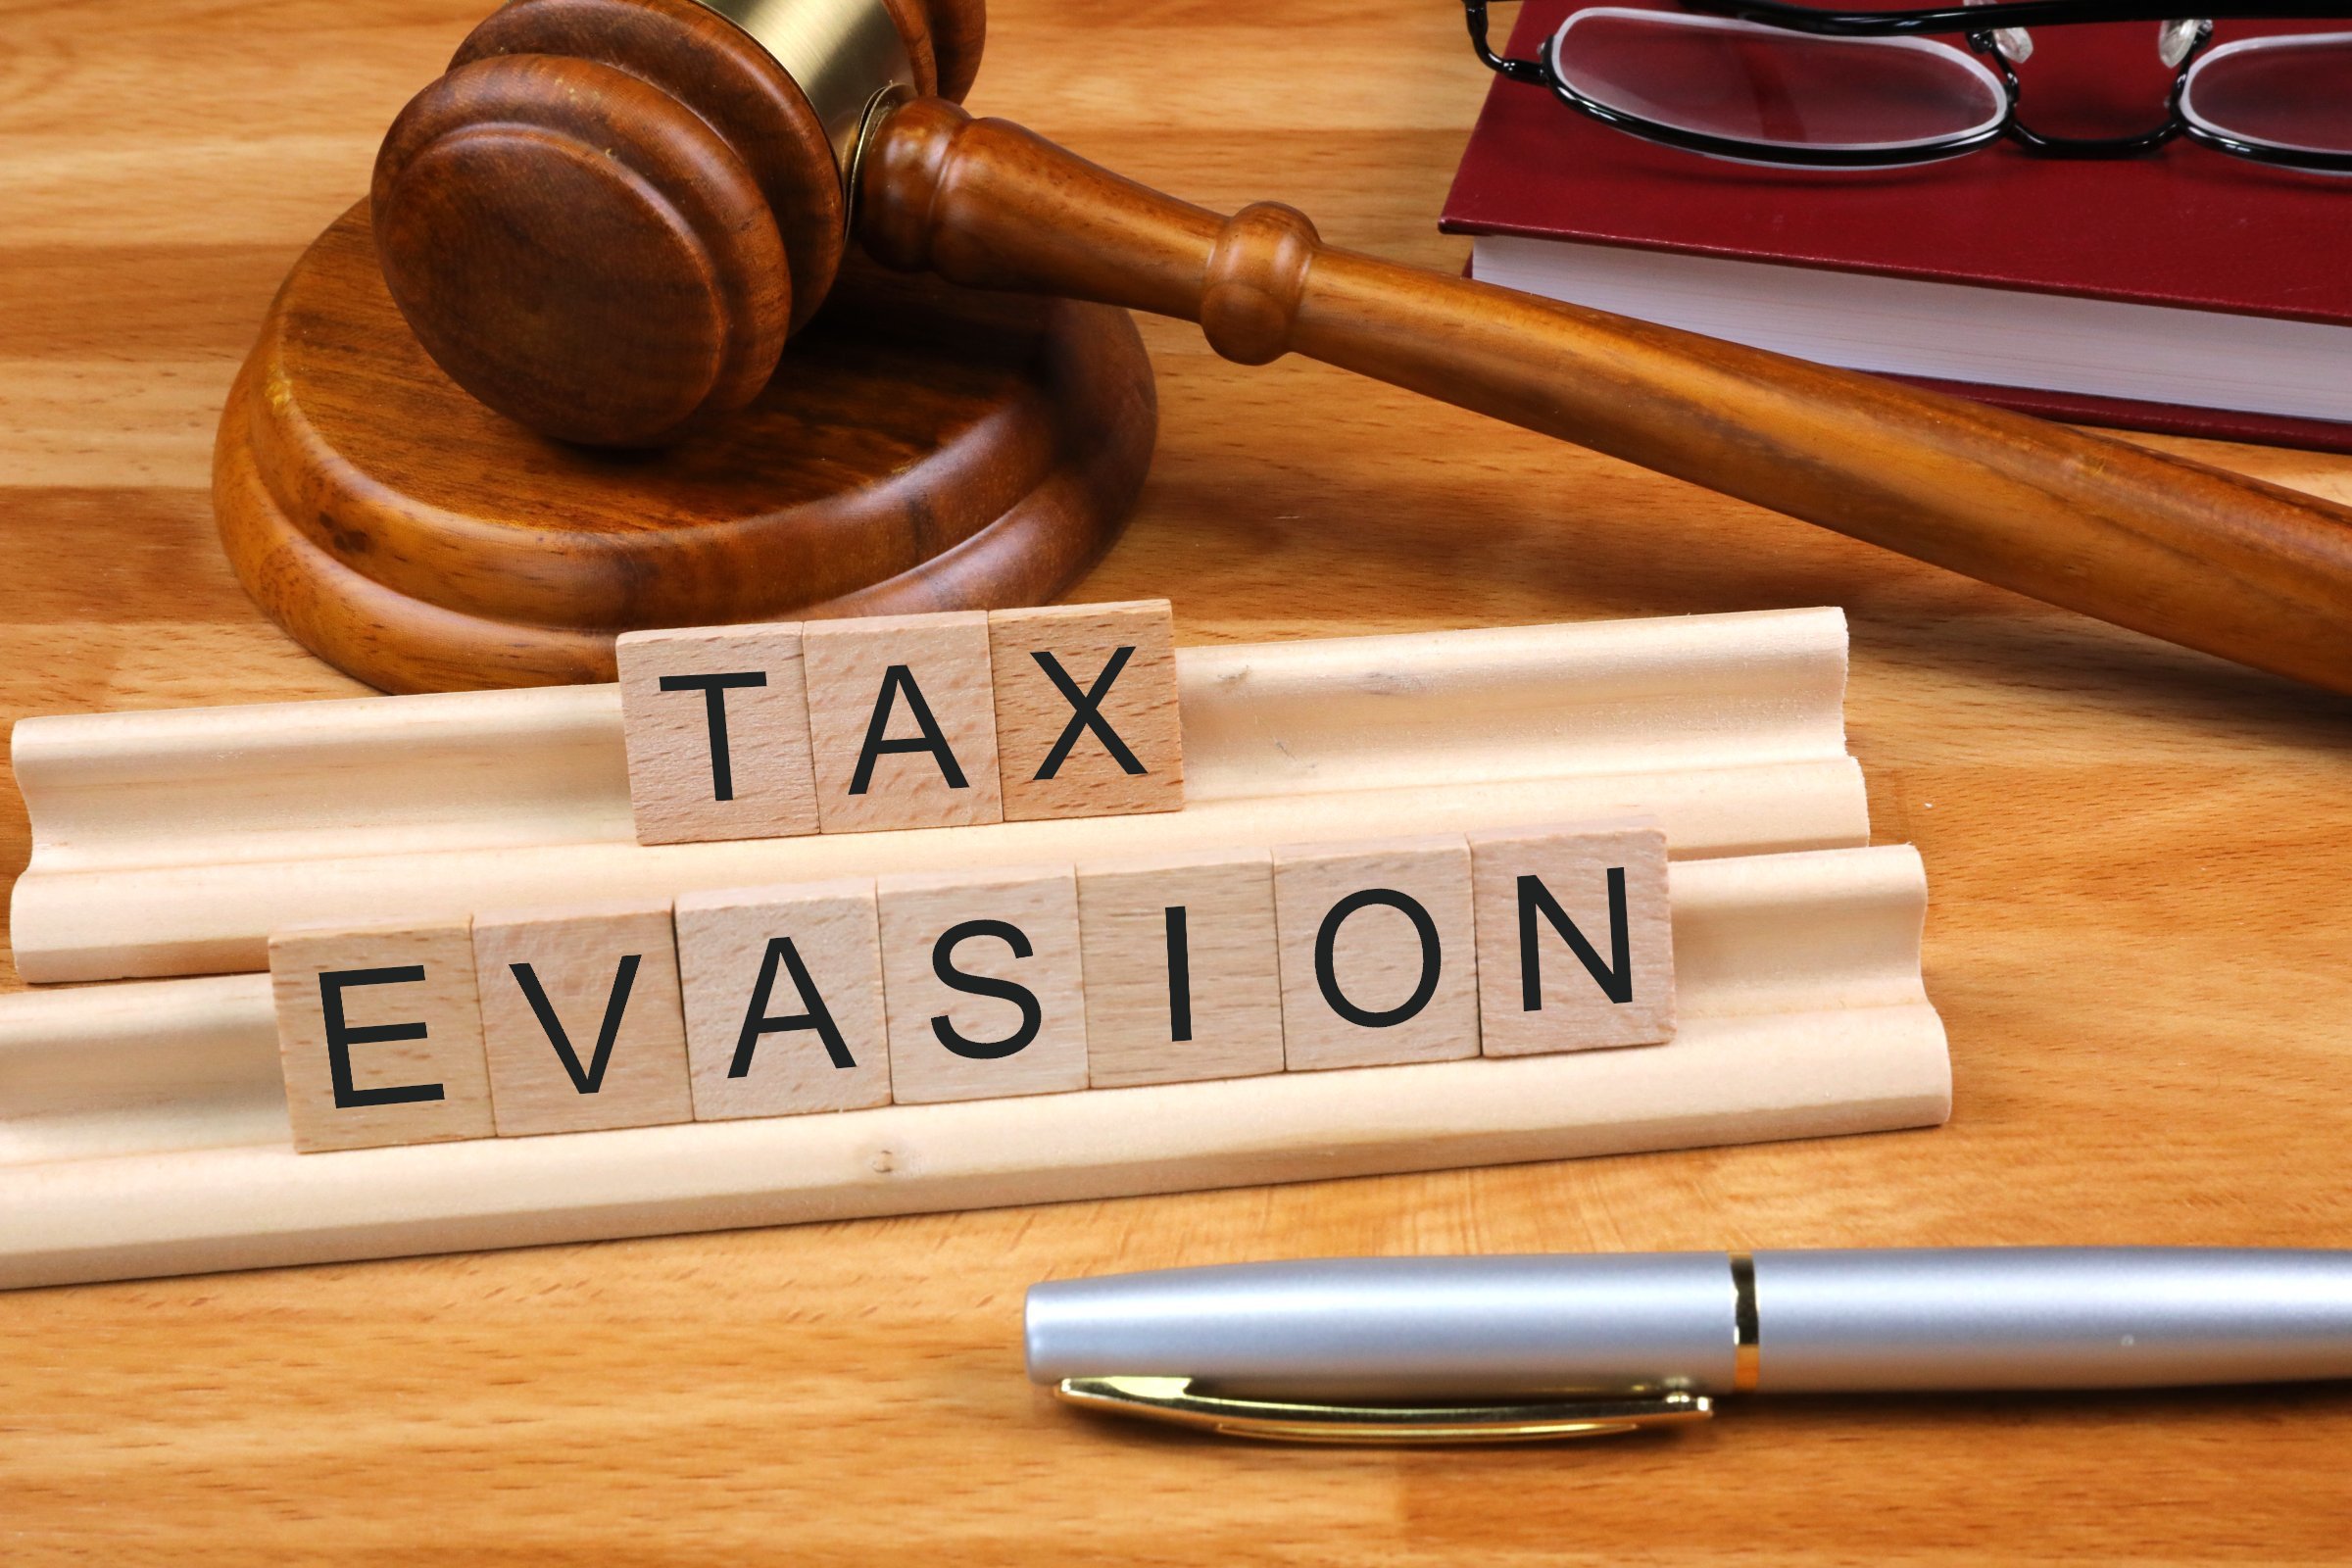 Tax evasion. Photo: Picpedia